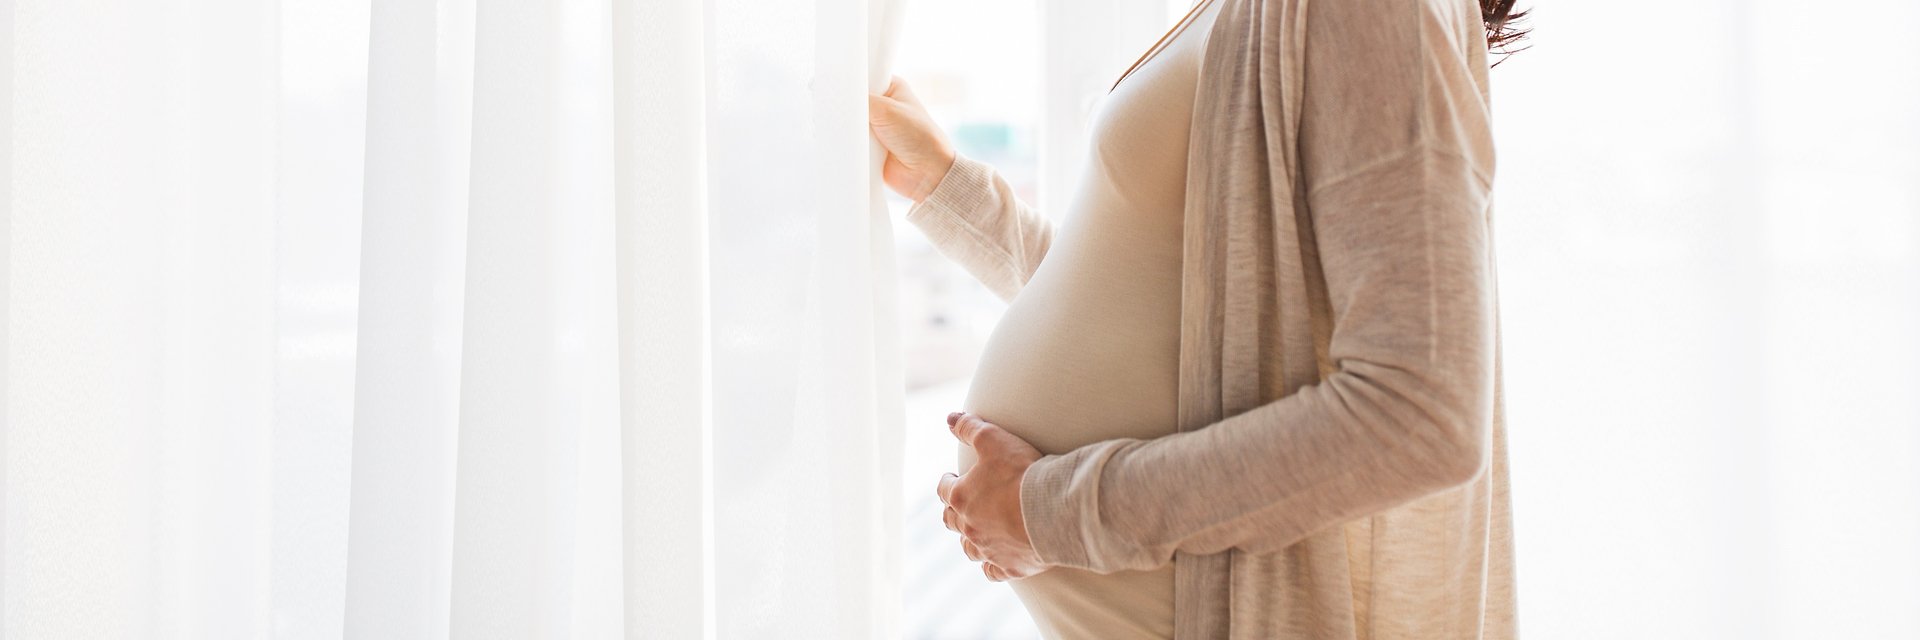 Ciąża w czasach kwarantanny – jak zapewnić sobie komfort nóg?